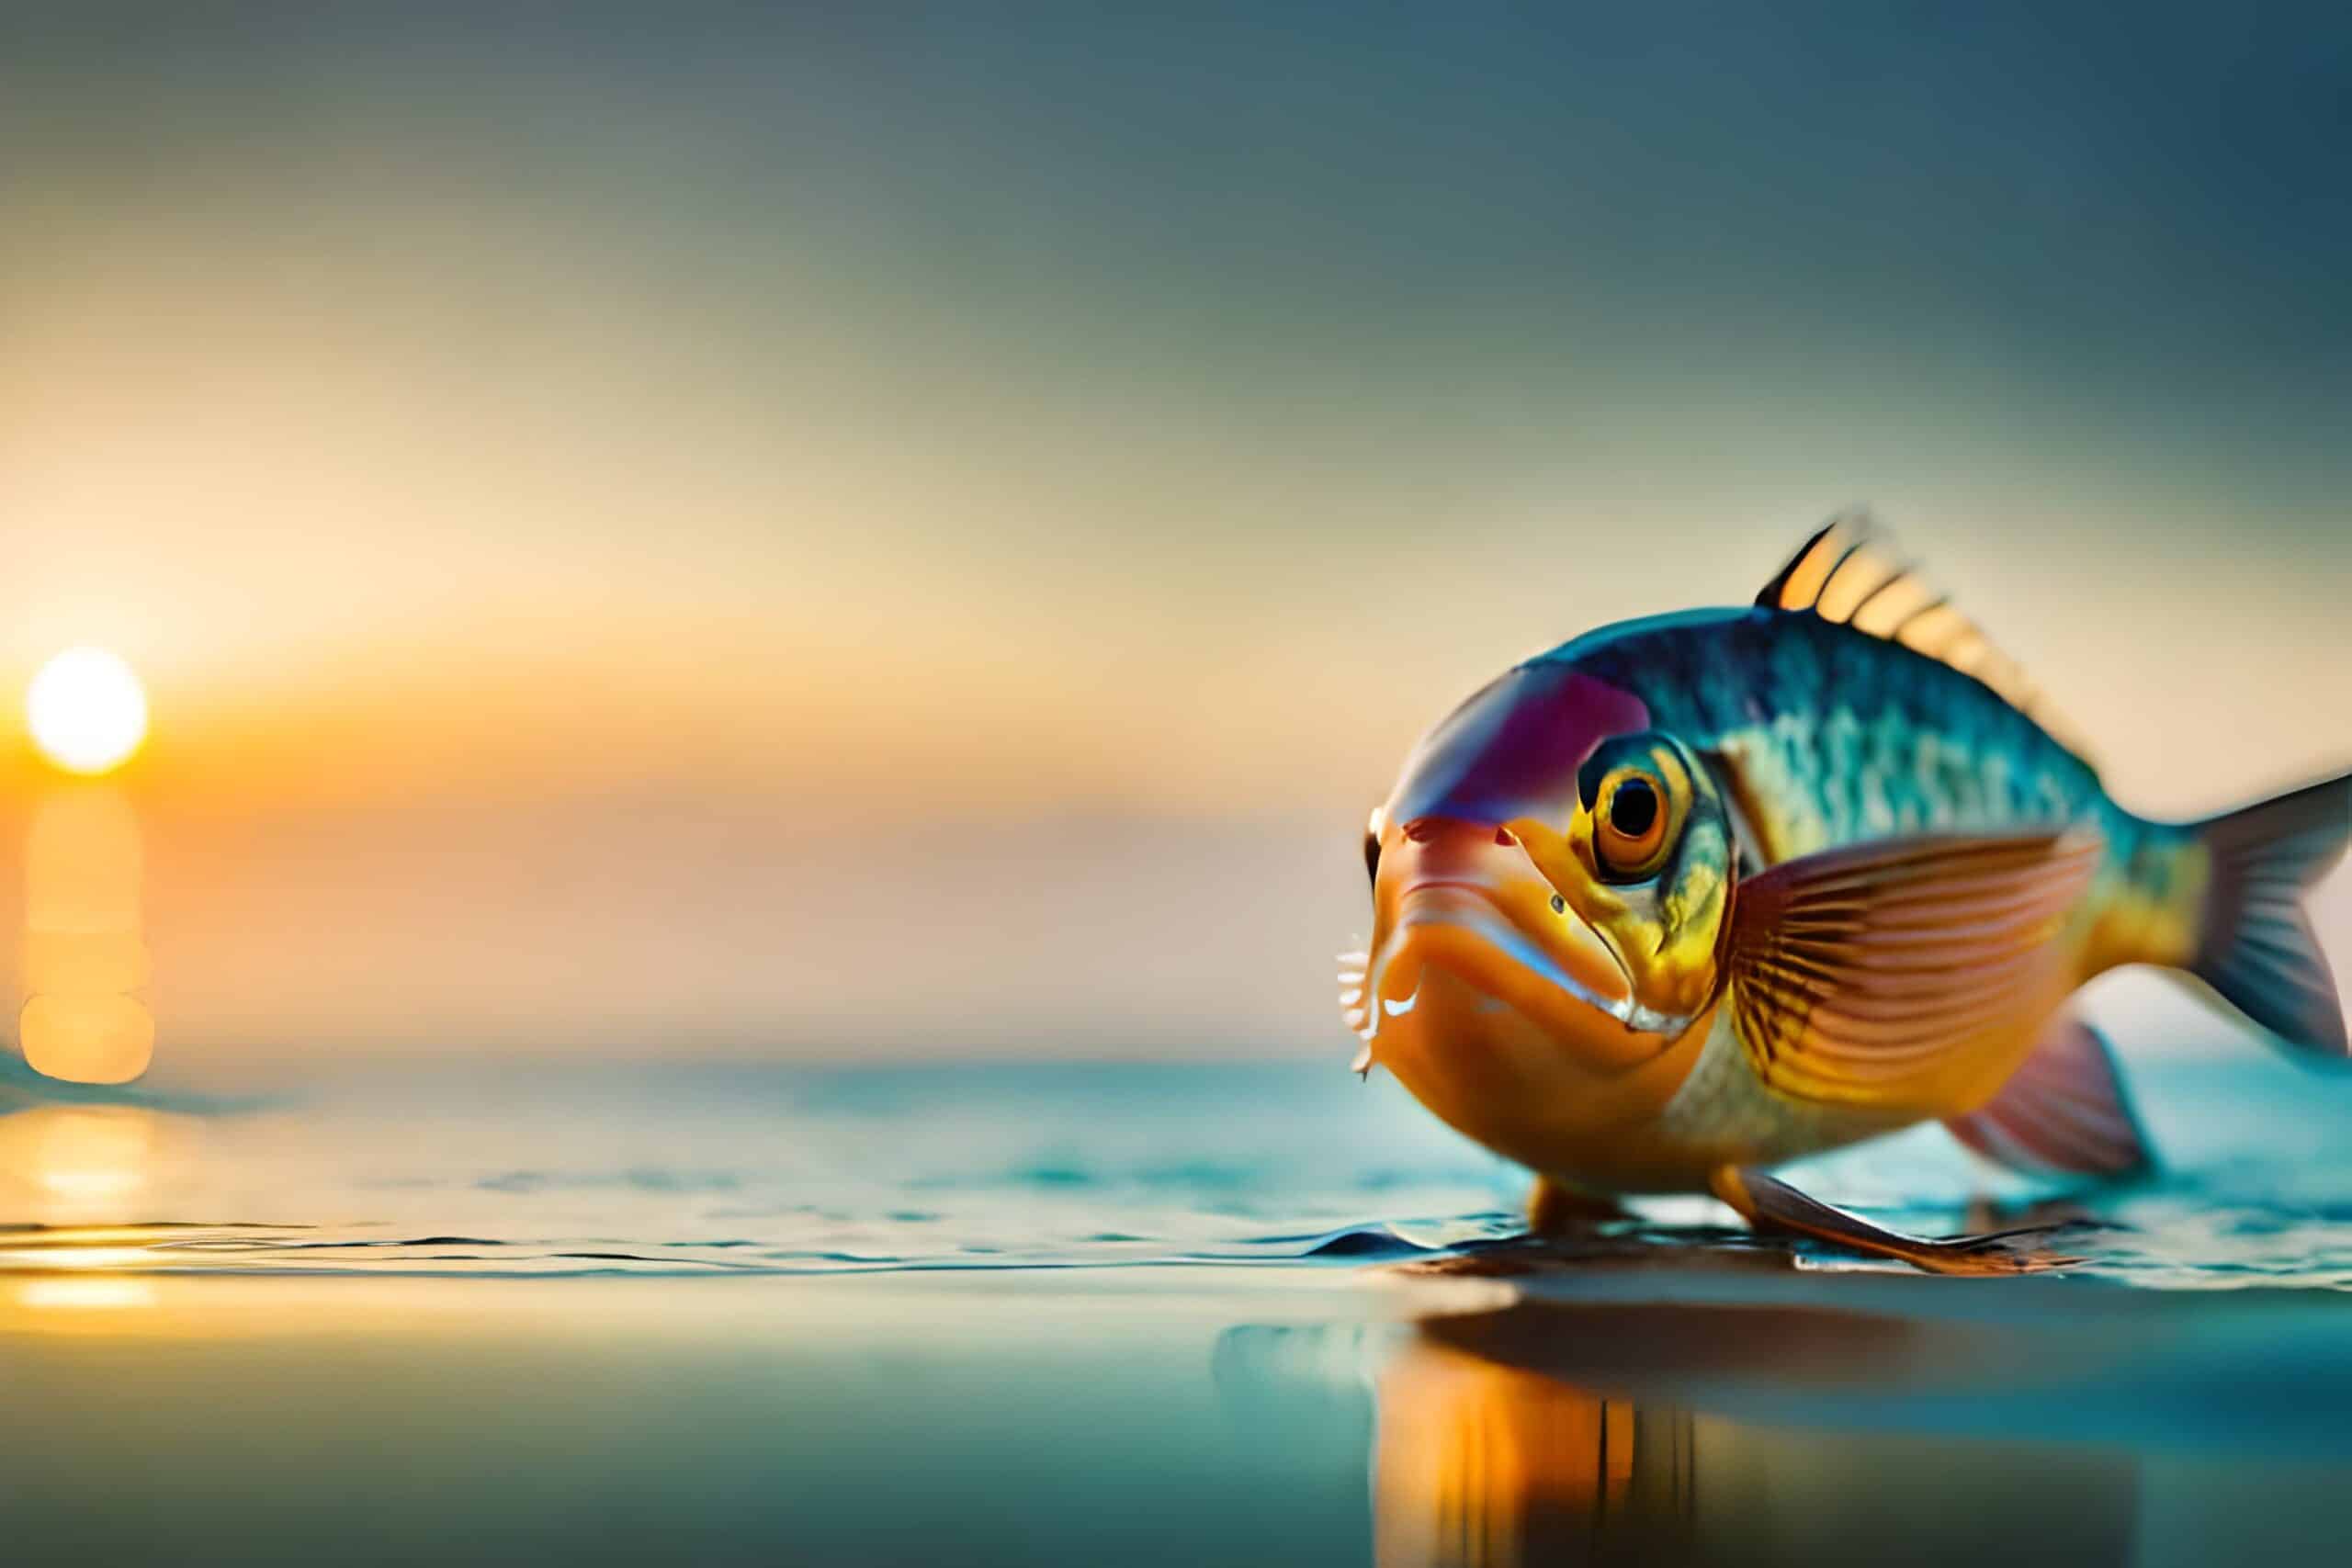 fanatic4fishing.com : Can fish see you when fishing?